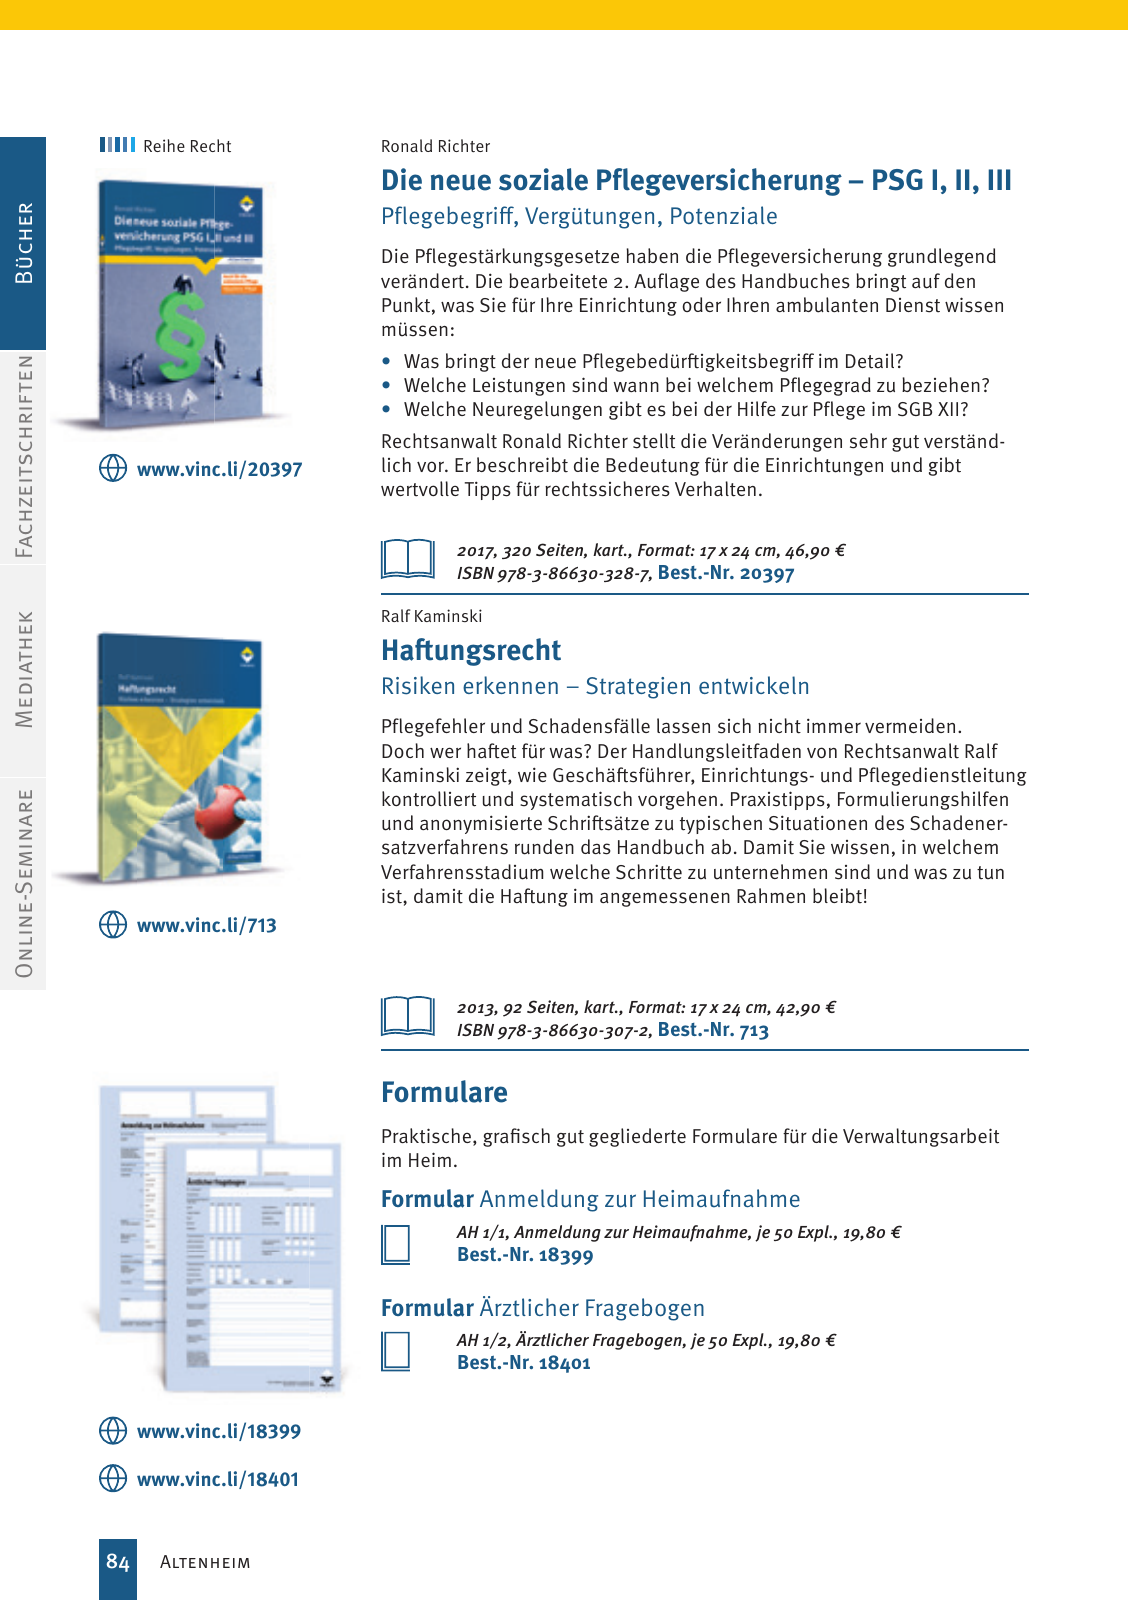 Vorschau Vincentz Verlagsprogramm 2020 Seite 84